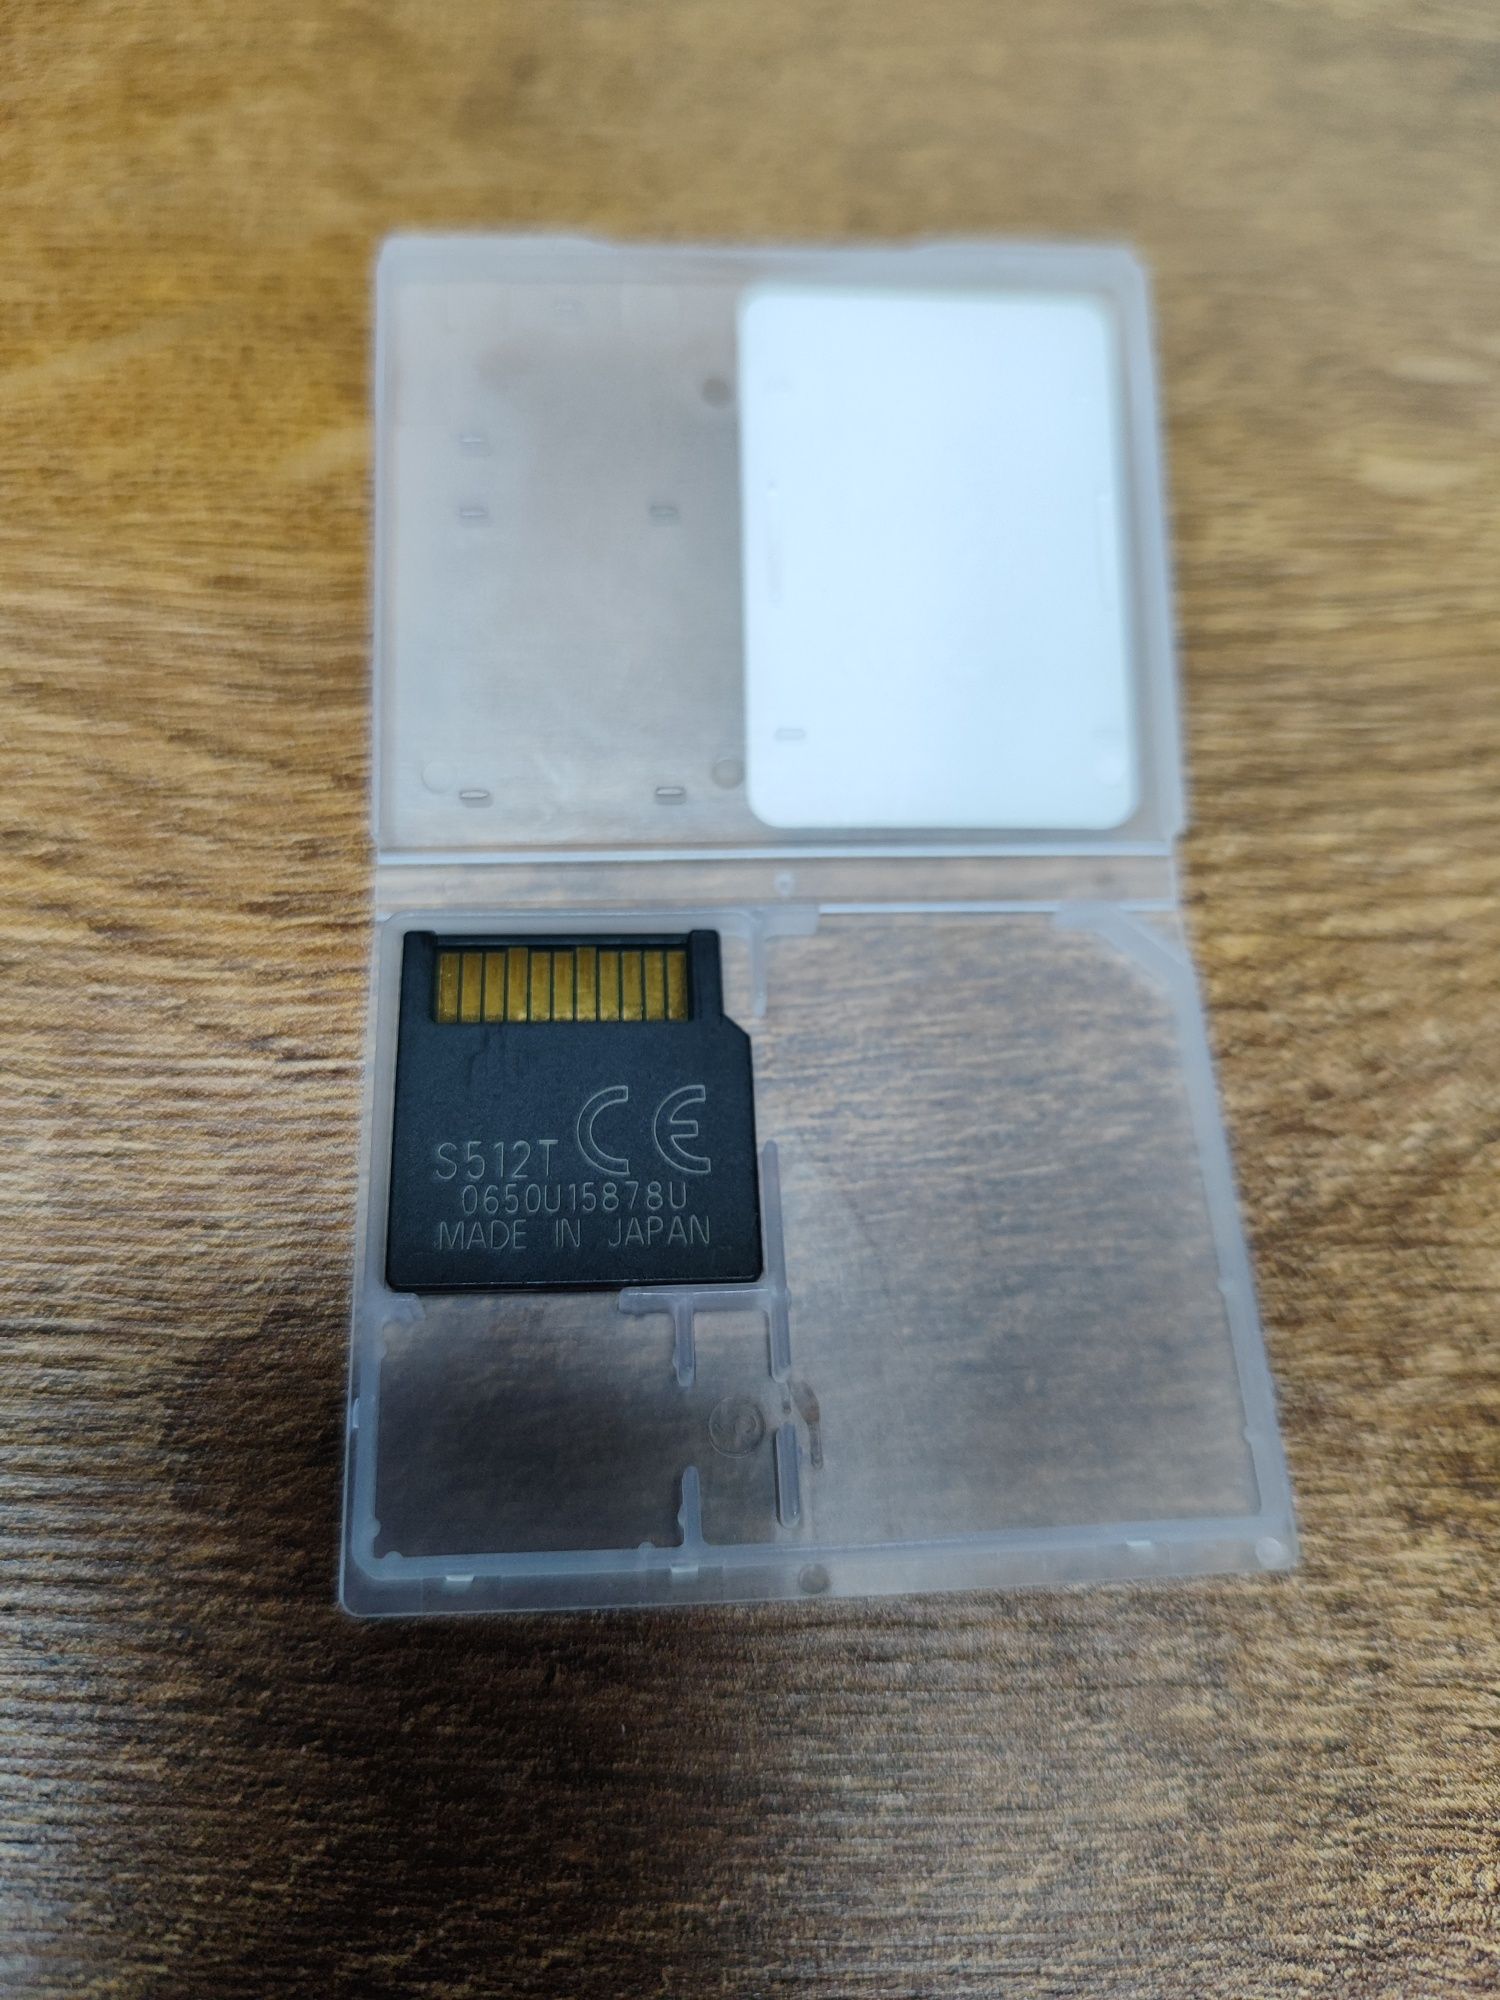 Karta Pamięci NOKIA MiniSD 512MB